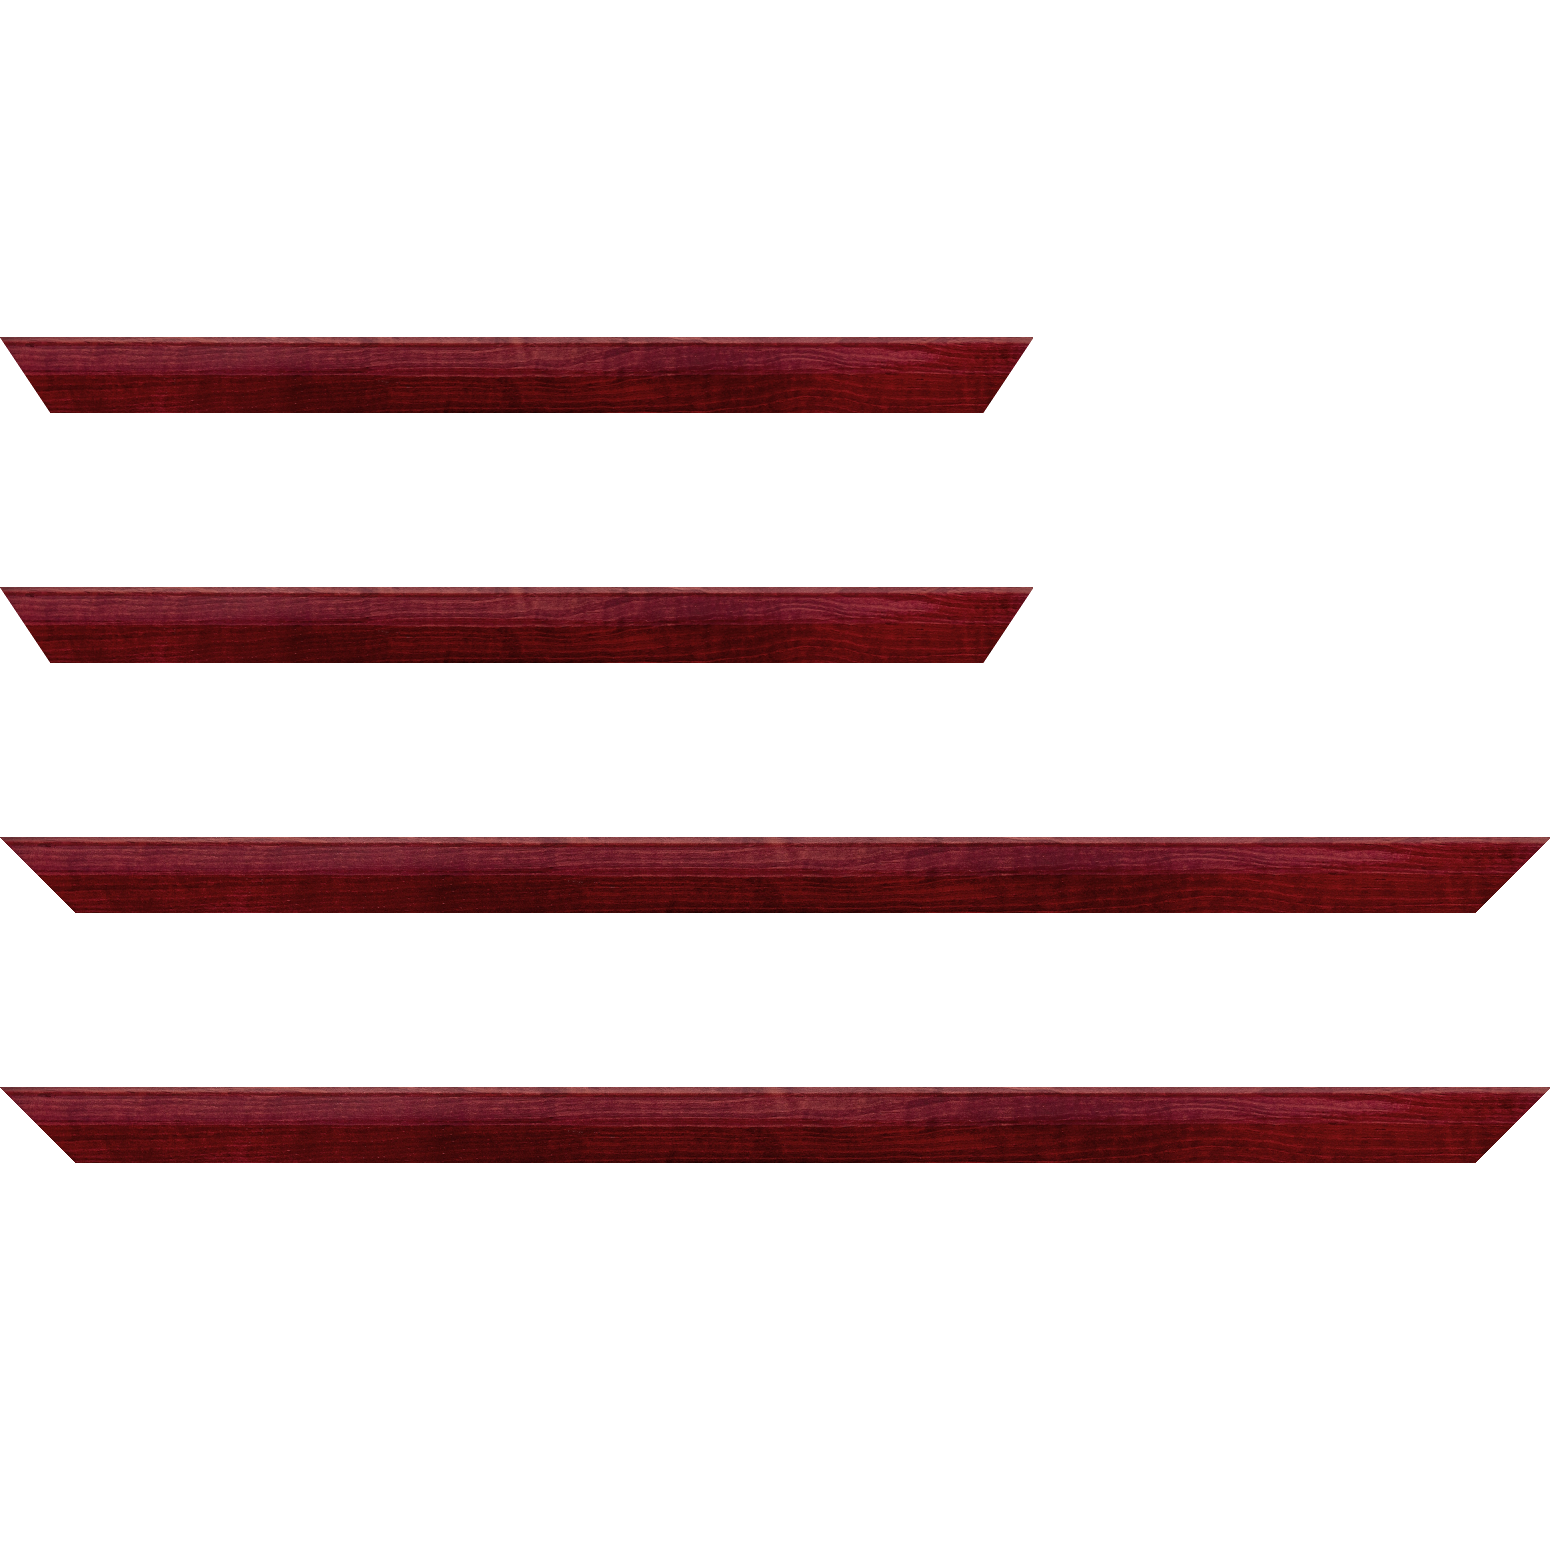 Baguette bois profil arrondi en pente plongeant largeur 2.4cm couleur bordeaux finition vernis brillant,veine du bois  apparent (pin) , - 59.4x84.1